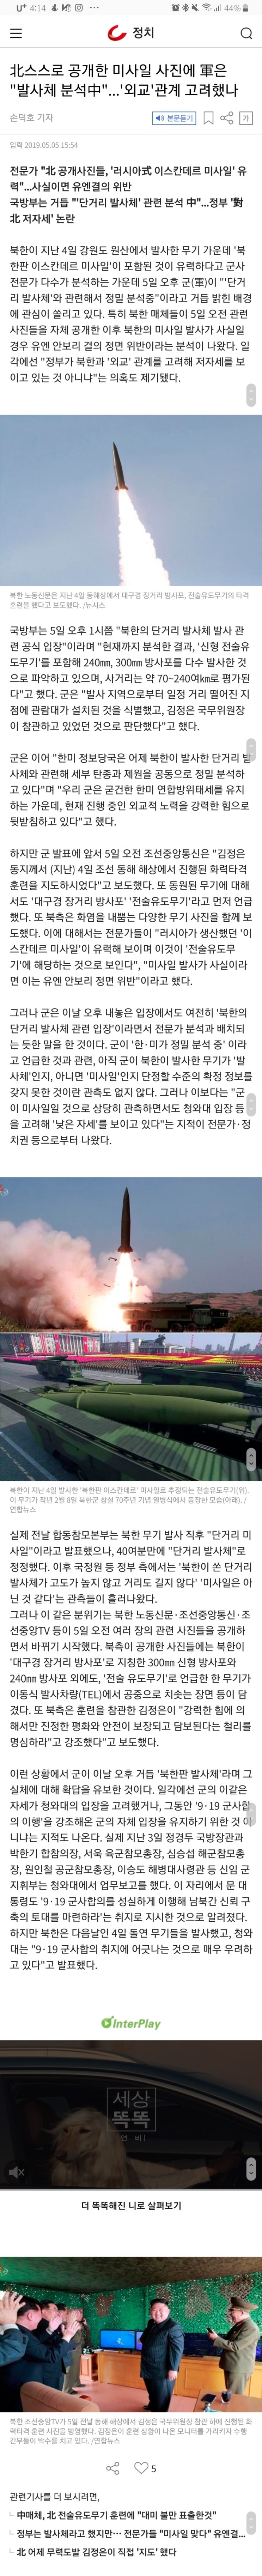 신뢰할 수 없는 북한 김정은 미사일 발사, 한국 언론